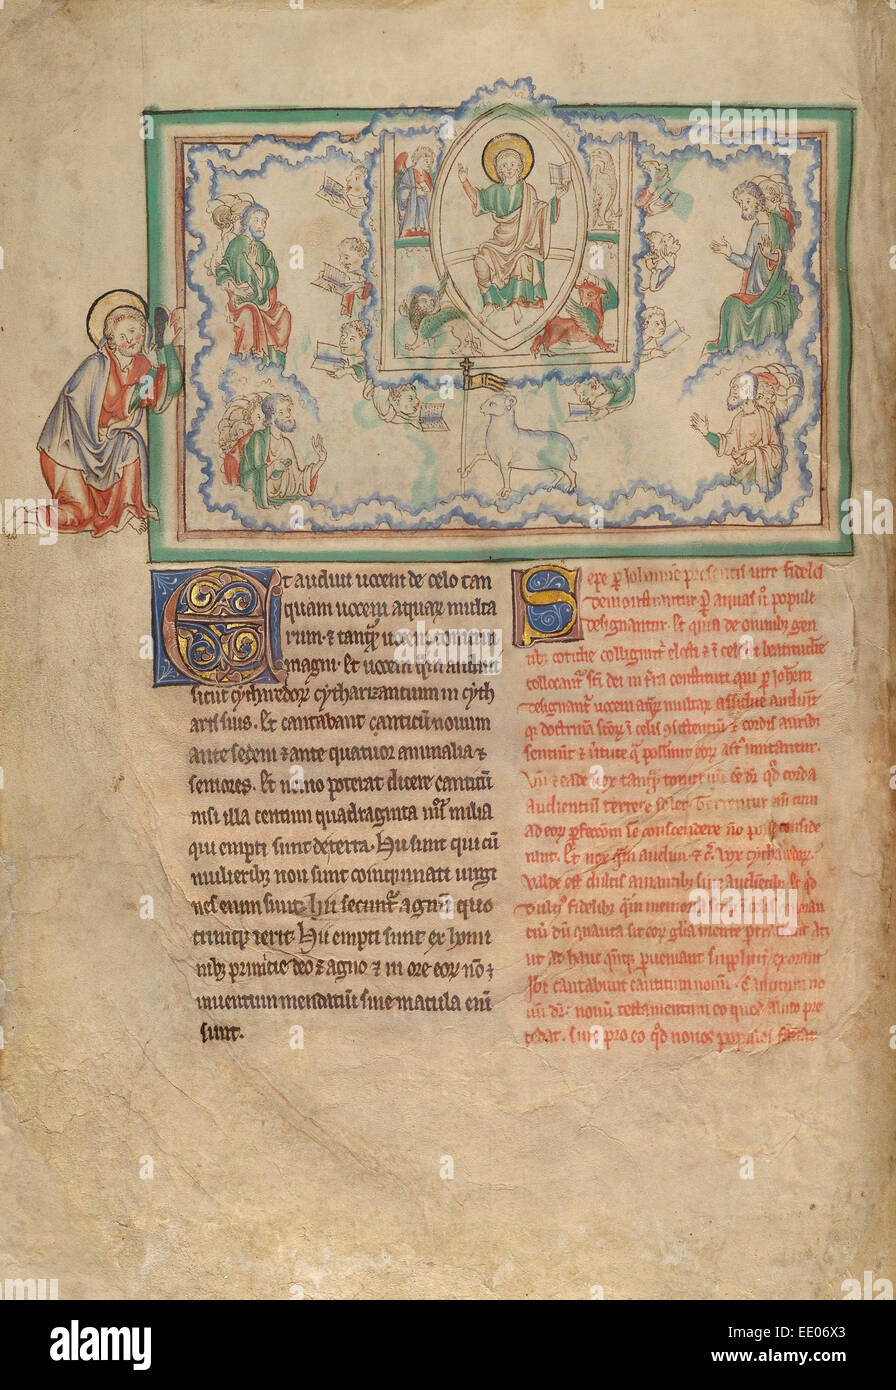 Il nuovo brano; sconosciuta; Londra (probabilmente), l'Inghilterra, l'Europa; circa 1255 - 1260; tempere, foglia oro, colorato di lavaggi, penna Foto Stock